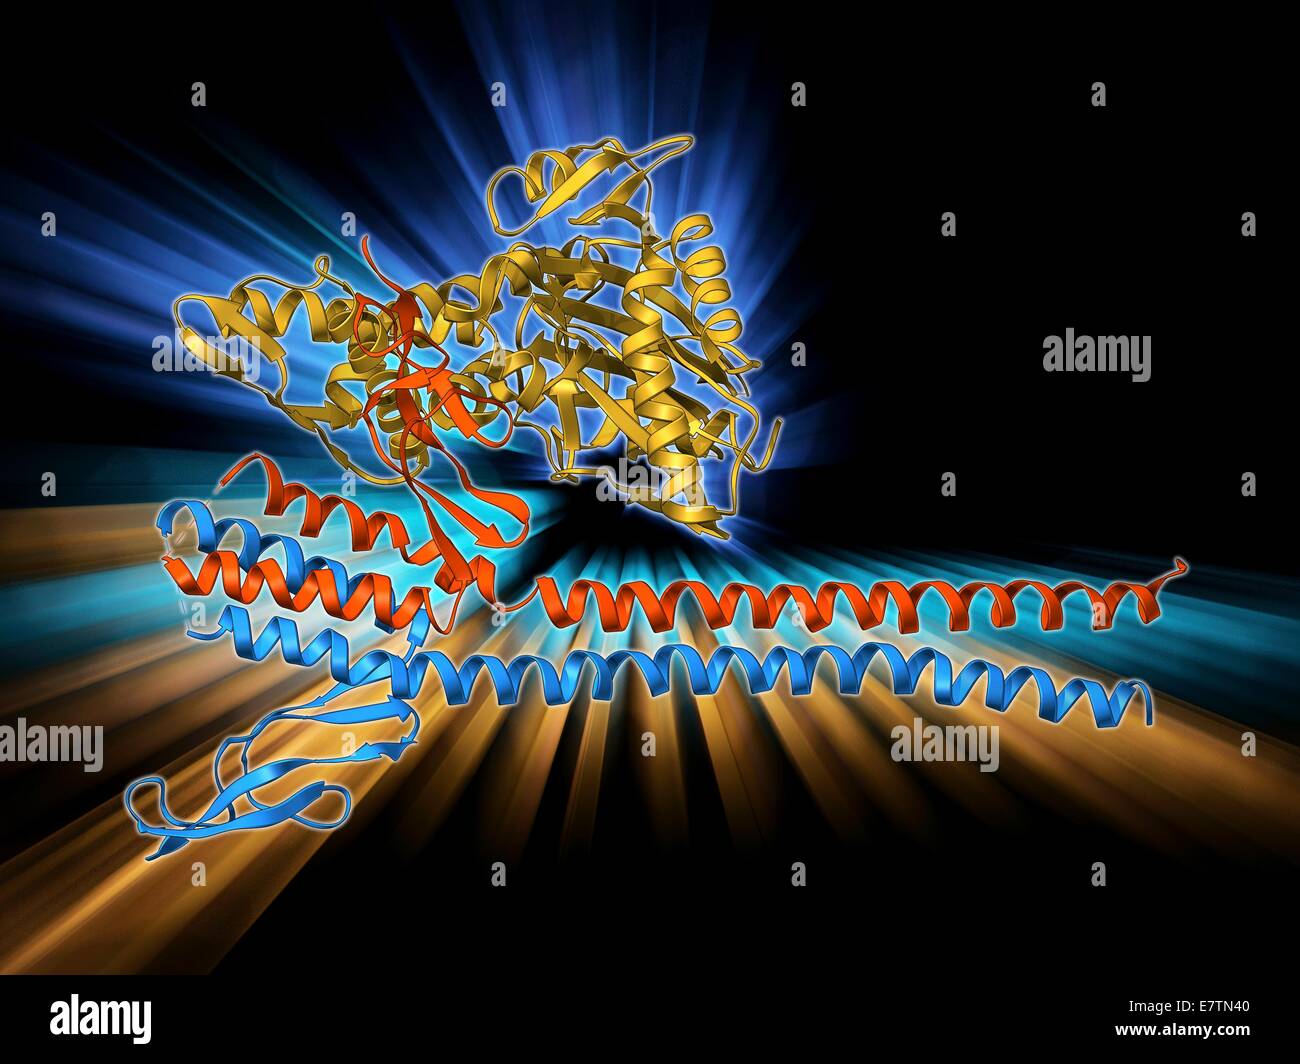 Factor de intercambio de nucleótidos. Modelo molecular de la proteína  factor de intercambio de nucleótidos GrpE complejado con el chaperón  proteínas DnaK. GrpE promueve la disociación de la ADP (adenosina  difosfato) de